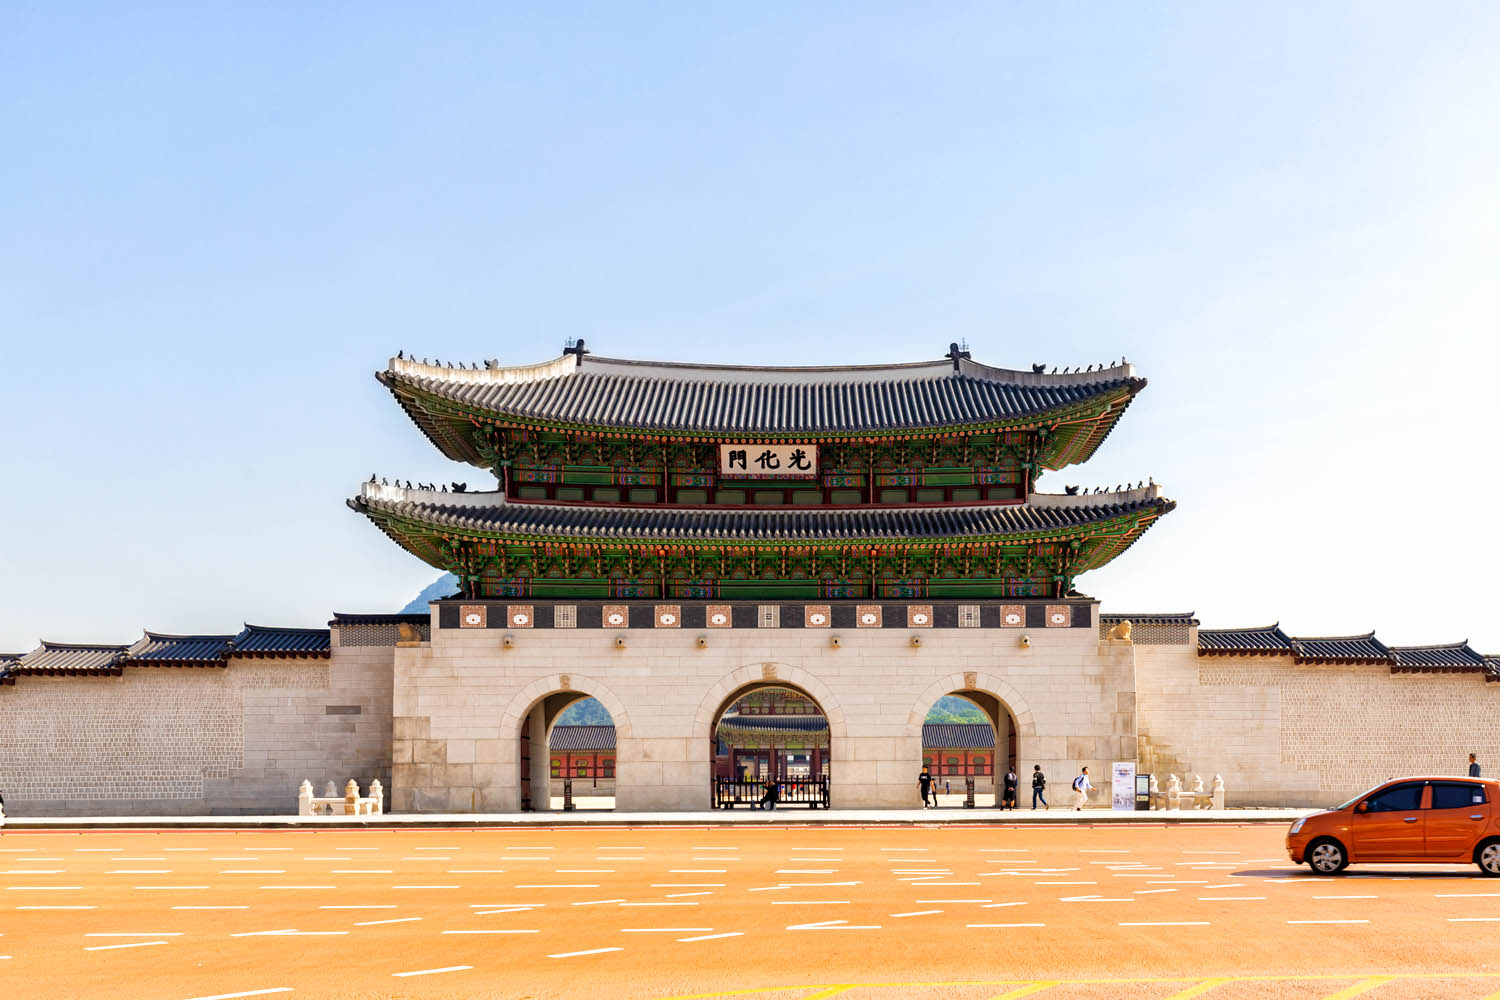 14世紀に創建された王宮の正門、ソウルの「光化門」